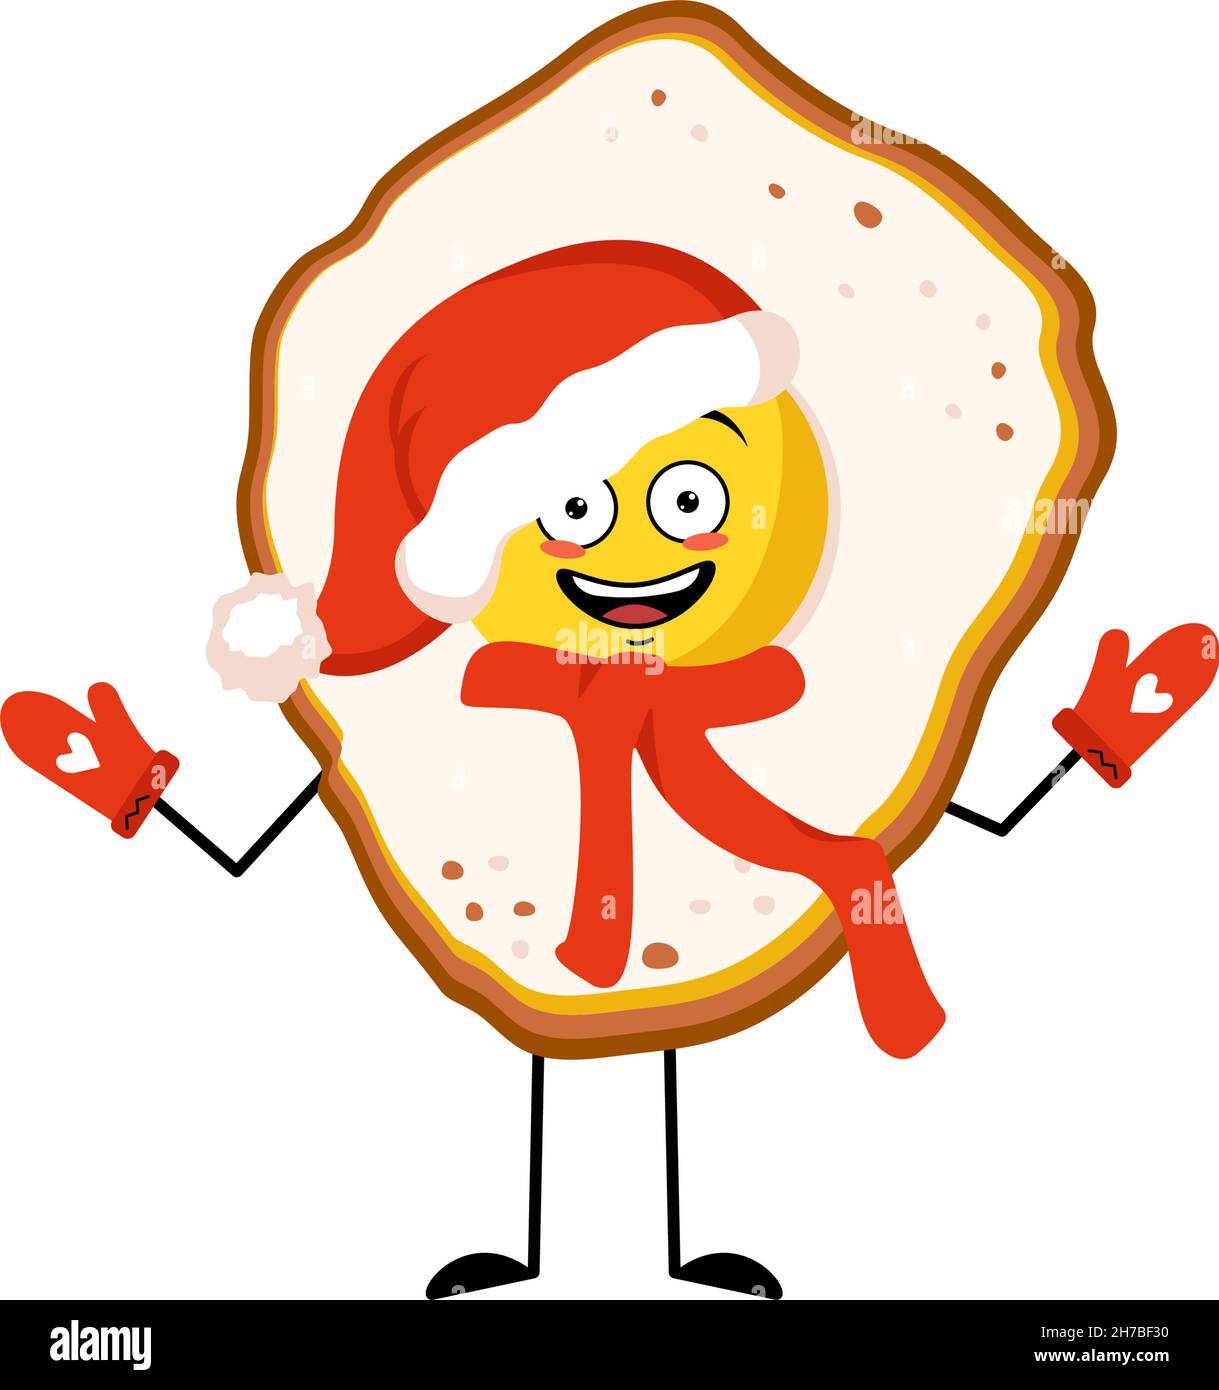 Niedliche Rühreier Charakter mit fröhlichen Emotionen, glückliches Gesicht, Lächeln, Augen, Arme und Beine in roten Weihnachtsmann Hut mit Schal und Fäustlinge. Das Essen zum Frühstück war gut. Vektorgrafik flach Stock Vektor